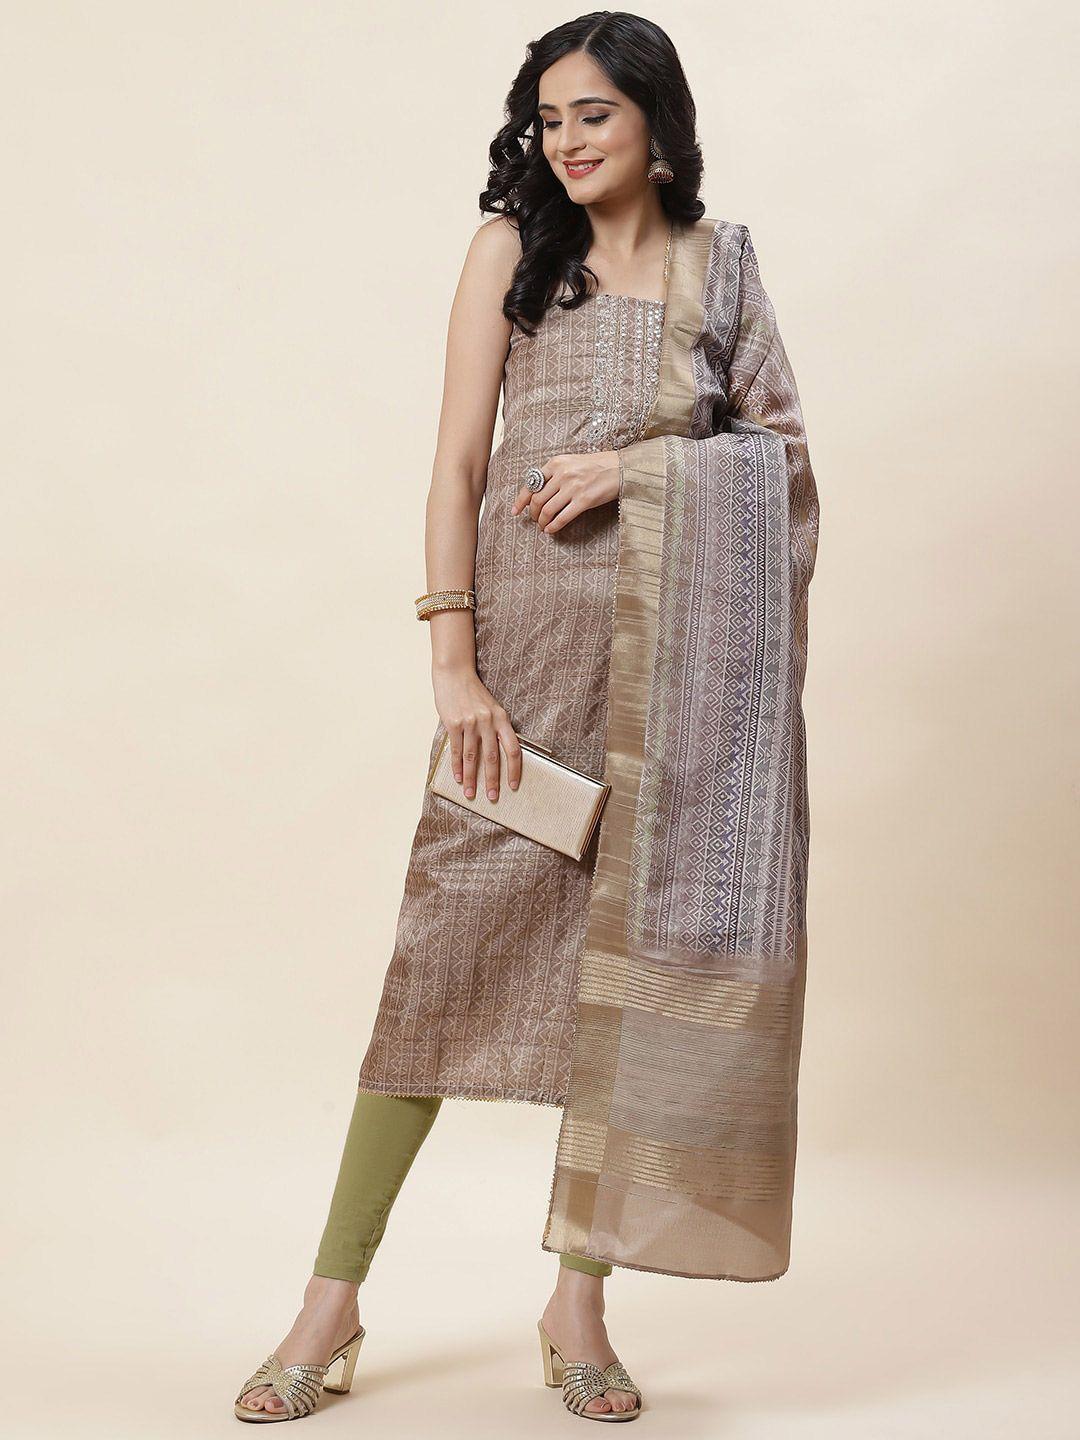 meena bazaar ethnic motif printed art silk unstitched dress material